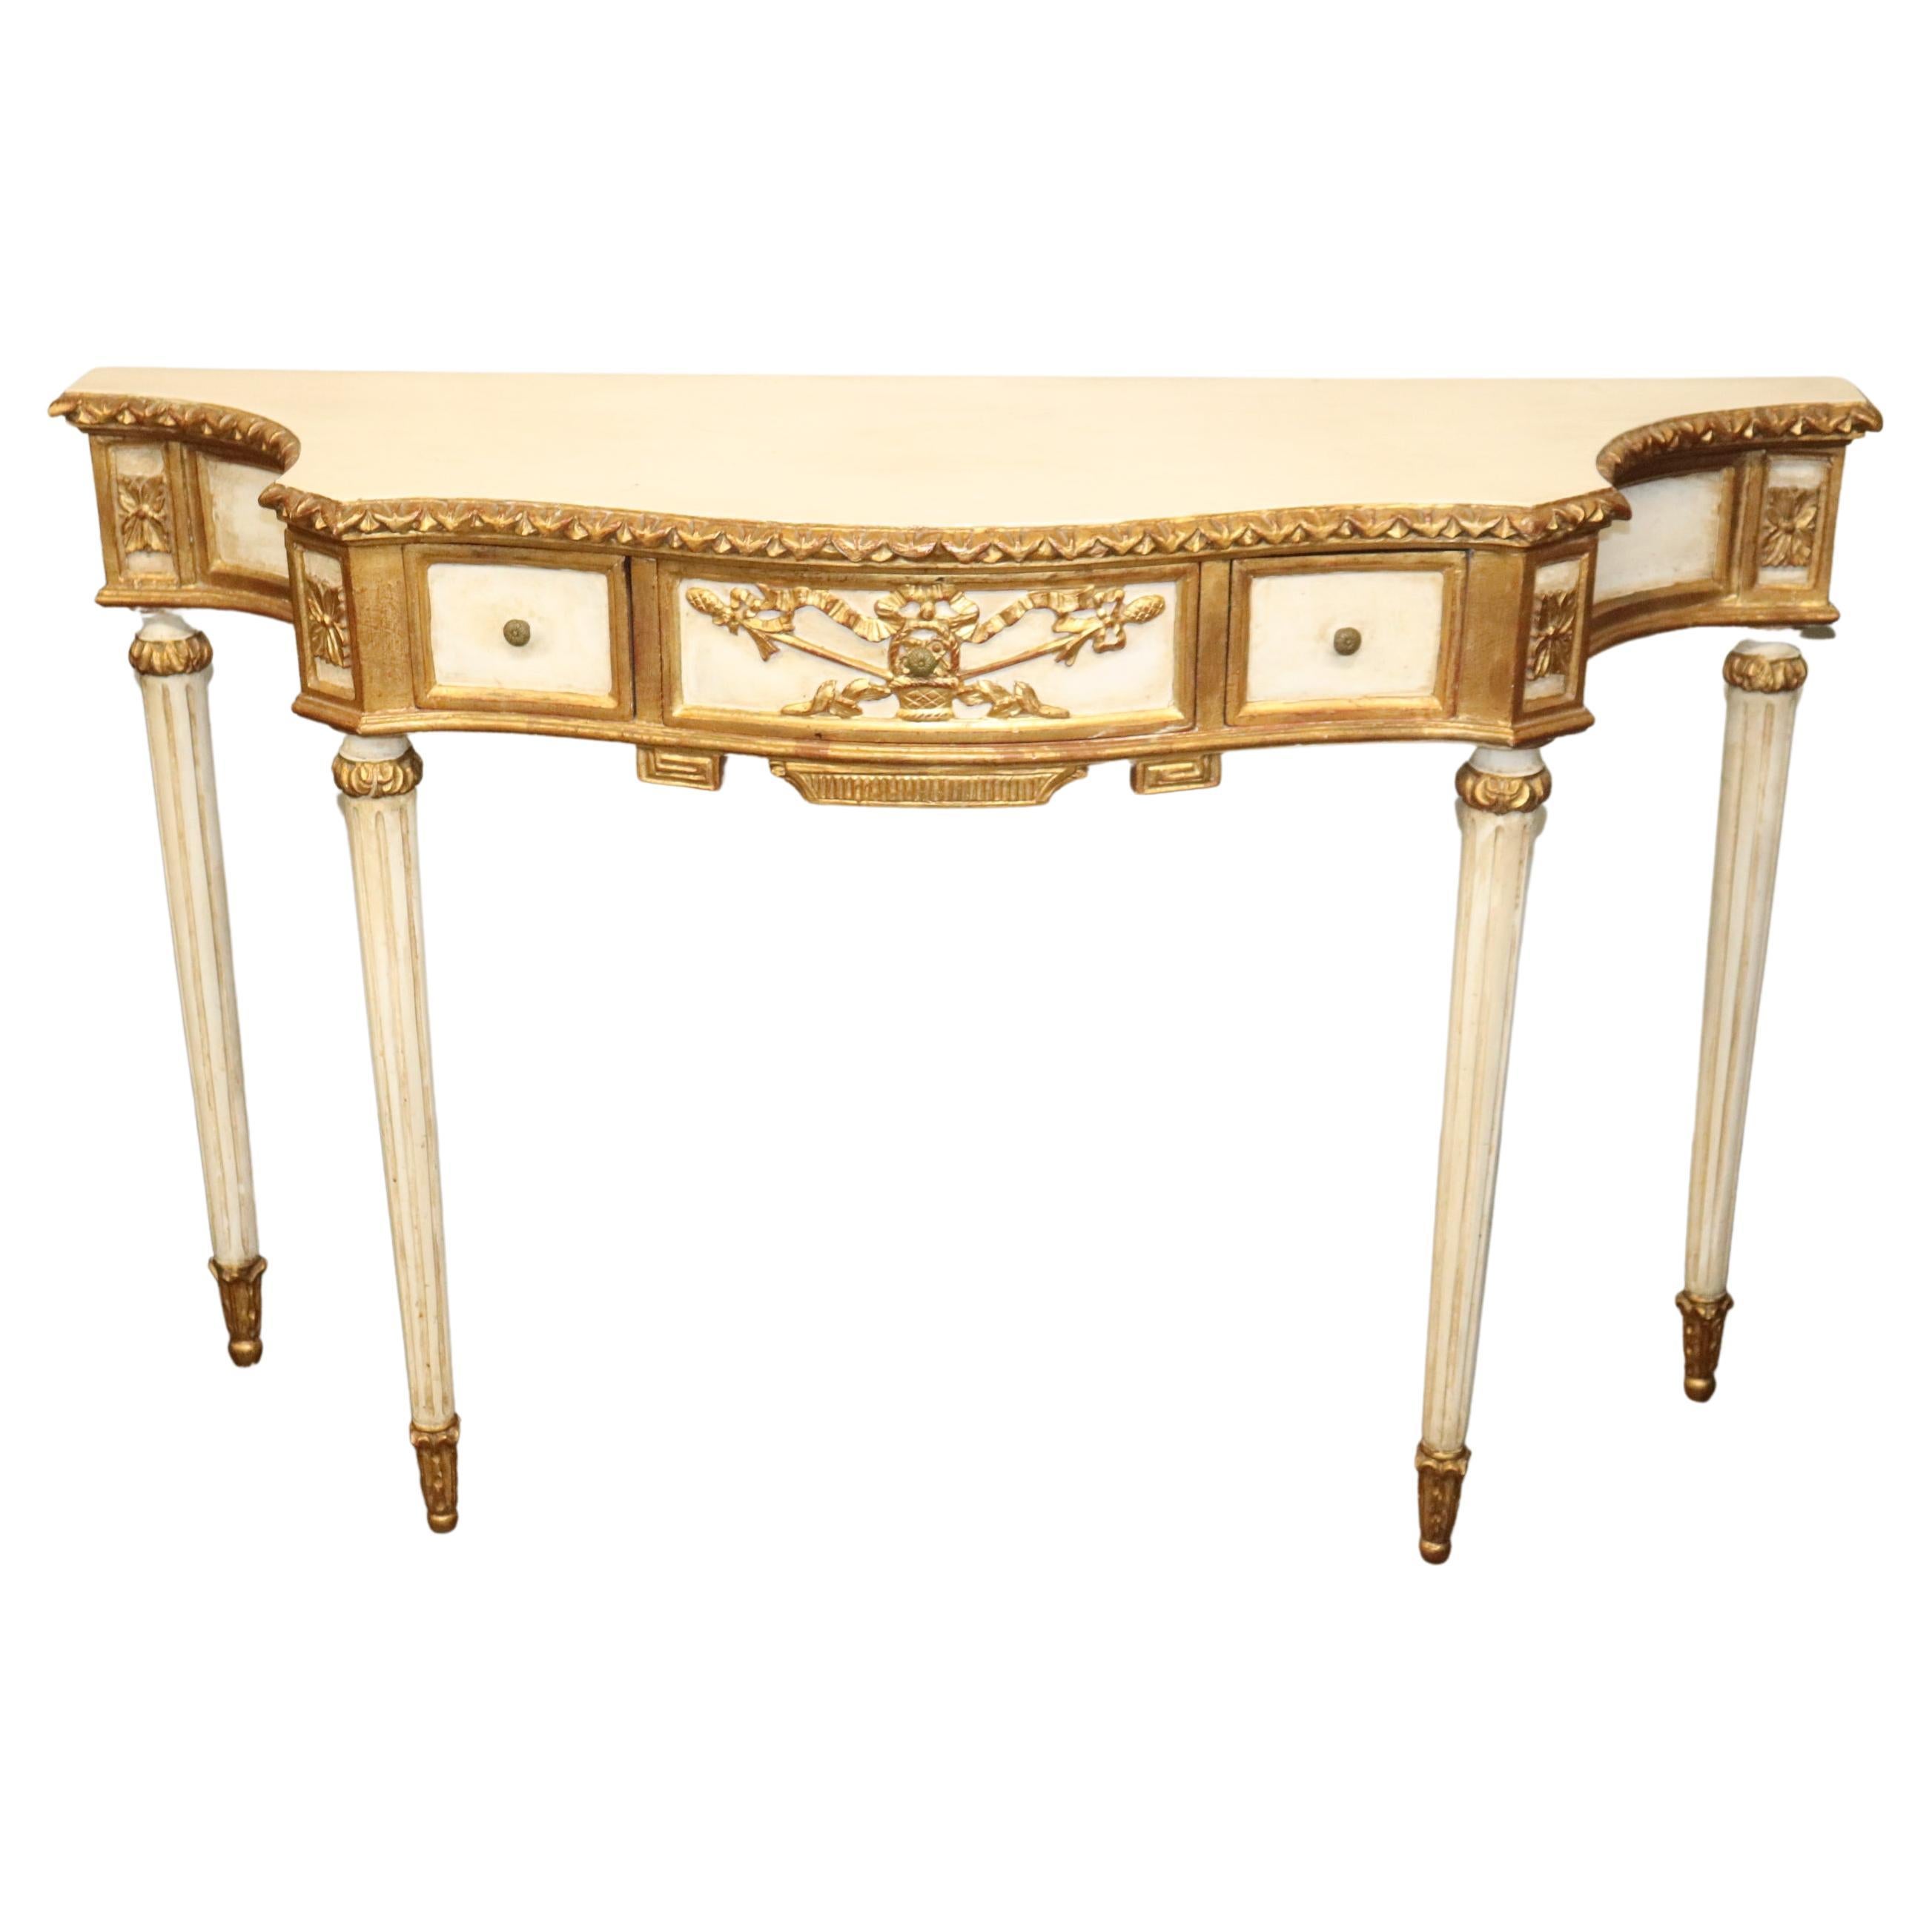 Ancienne table console italienne Florentine peinte en blanc et dorée, vers les années 1940